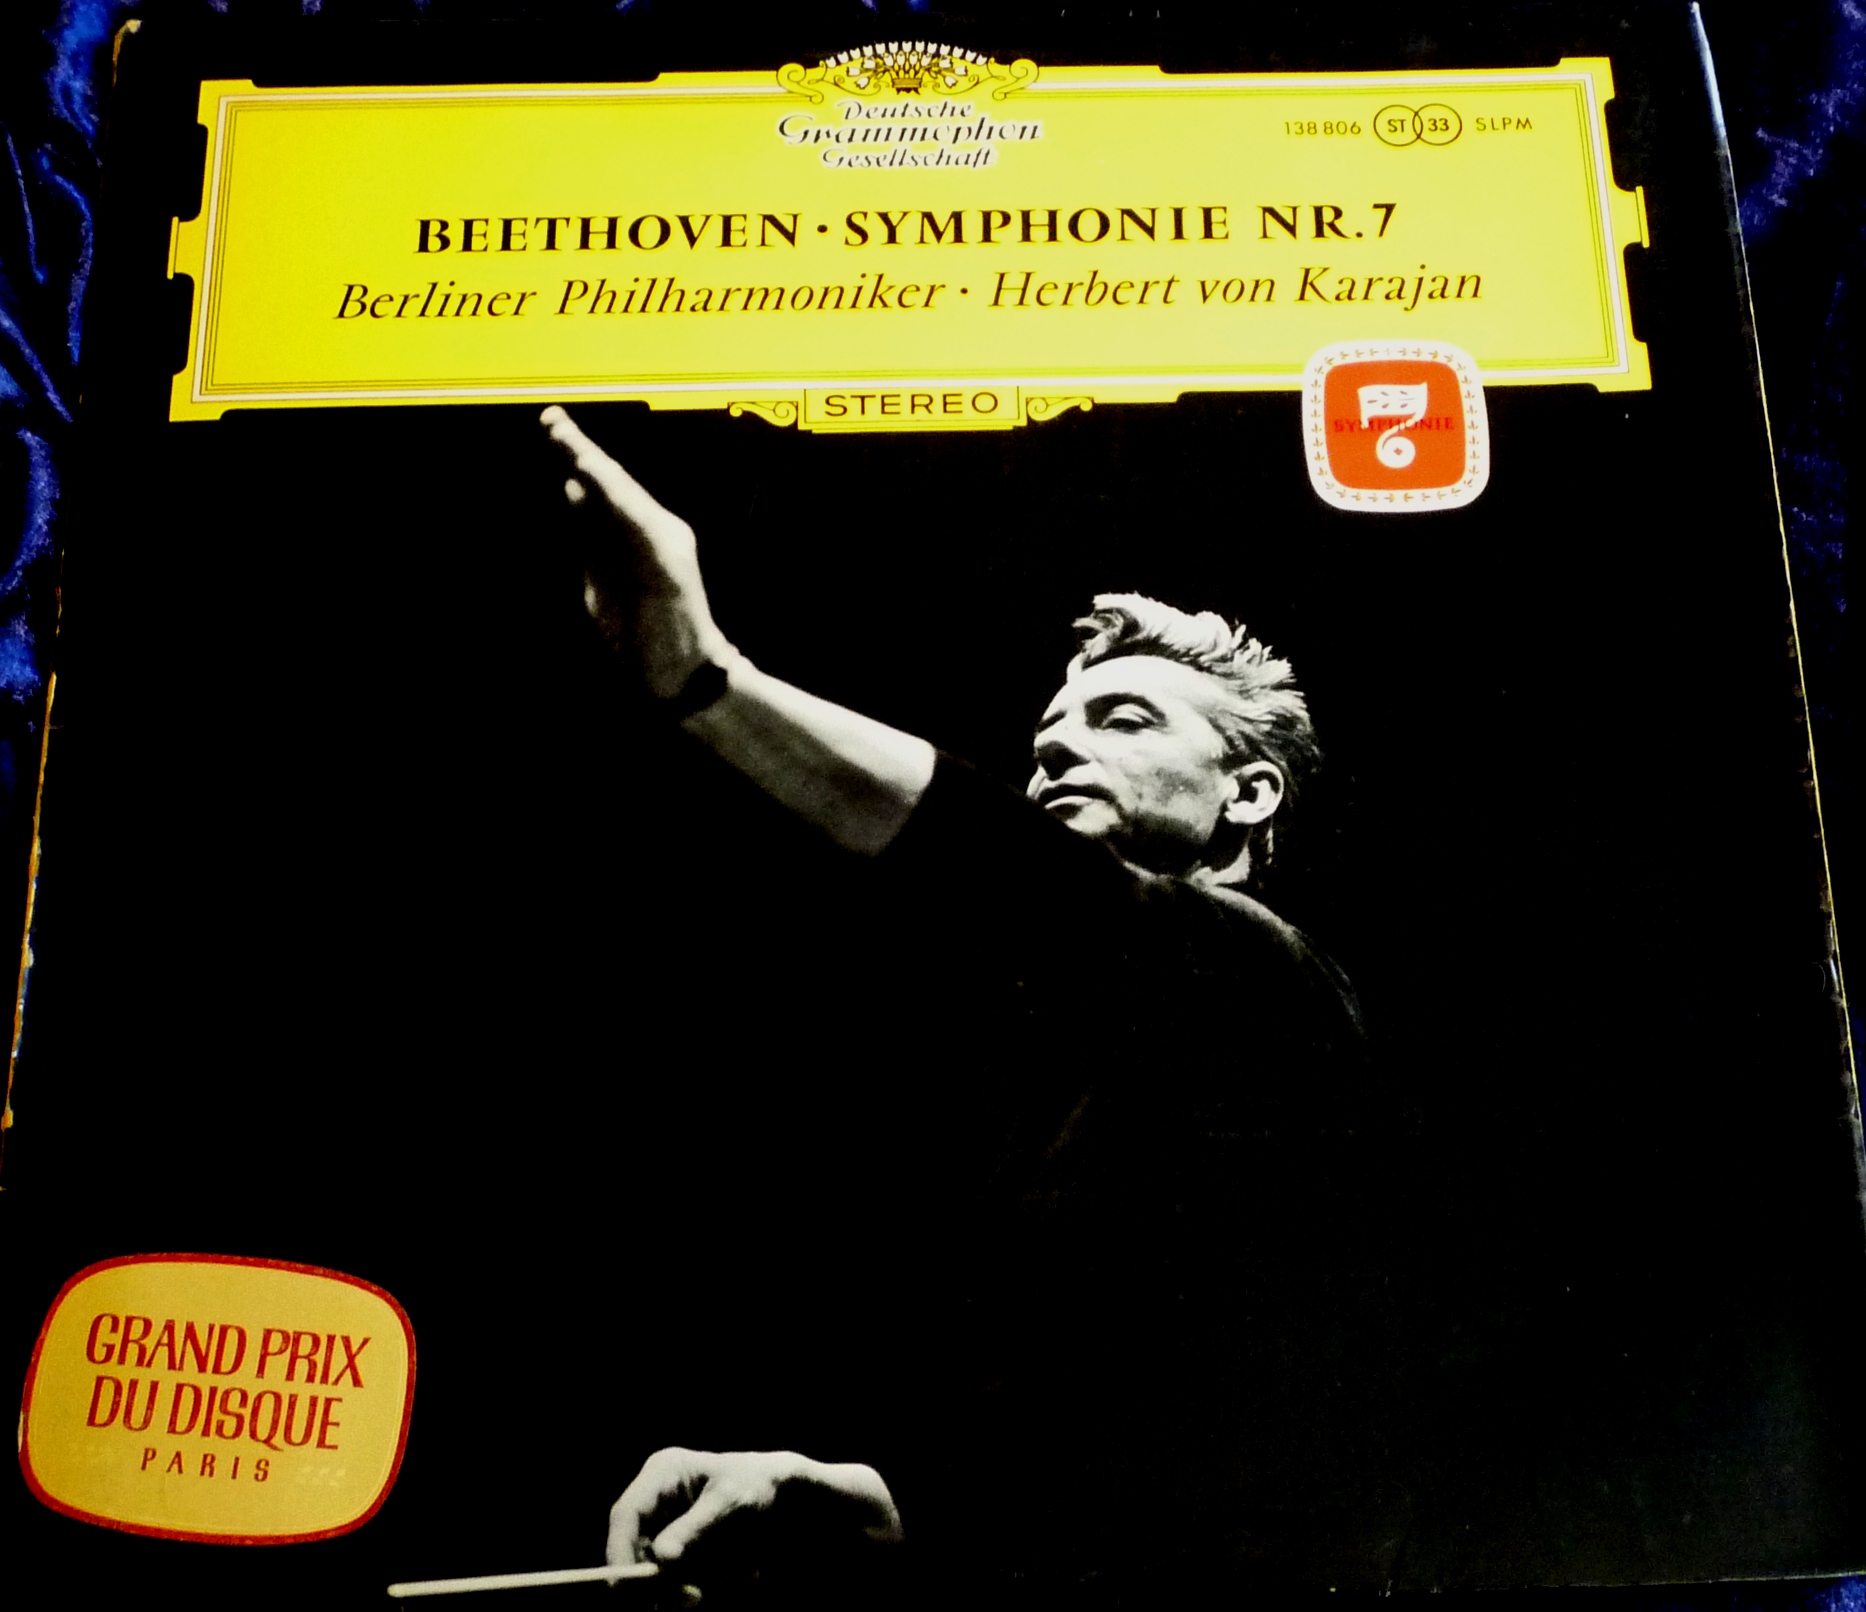 Beethoven/Symphony No.7 - BPO/Karajan